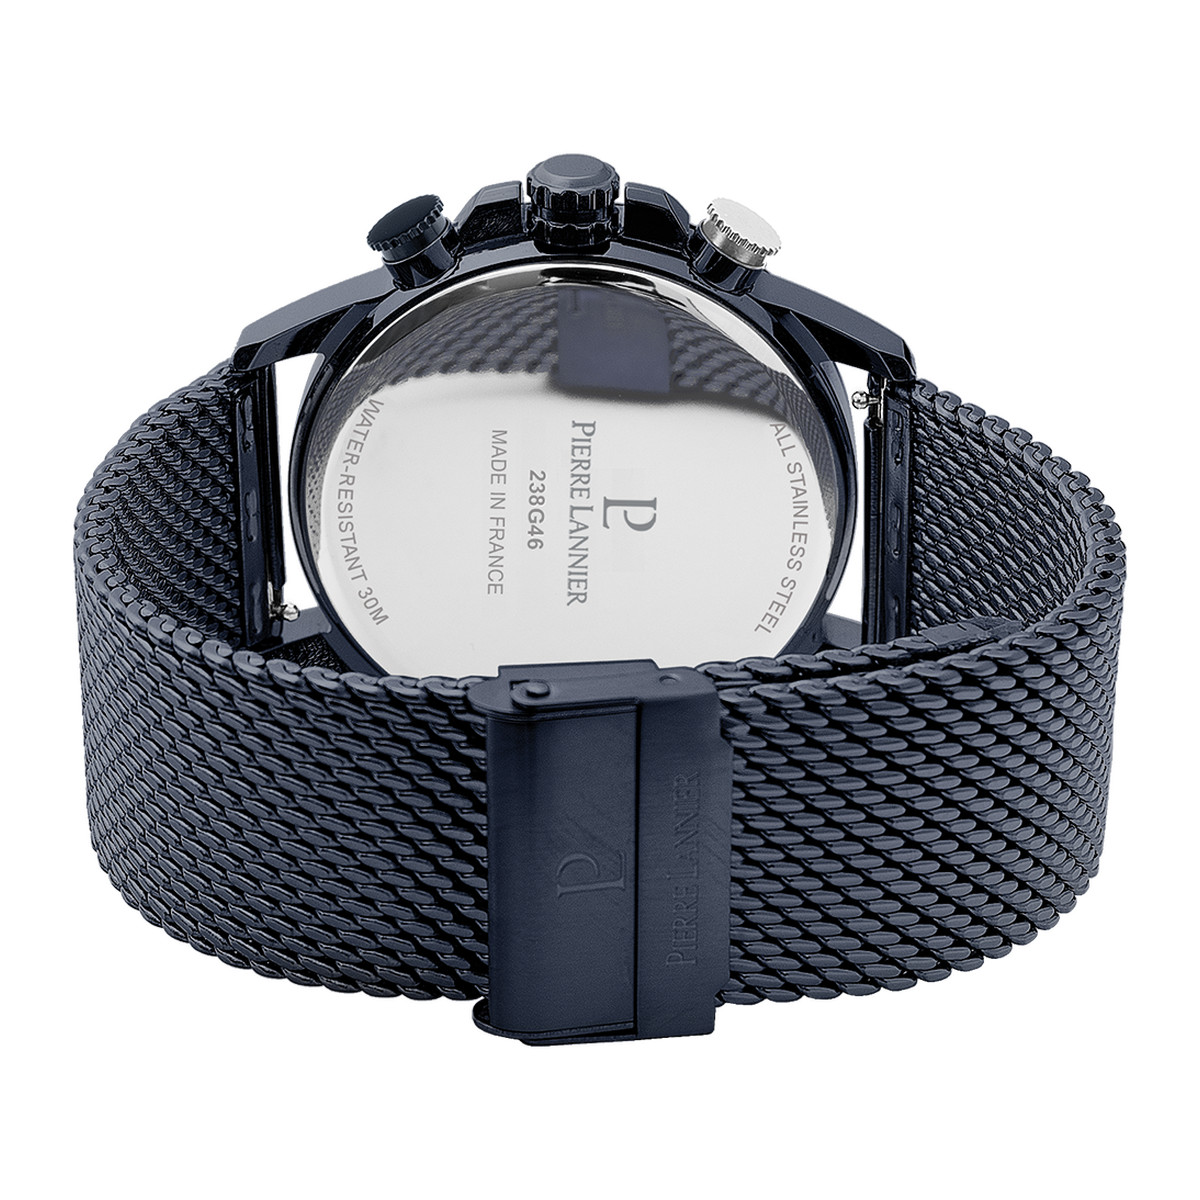 Montre PIERRE LANNIER Sentinelle homme chronographe bracelet acier bleu - vue 3